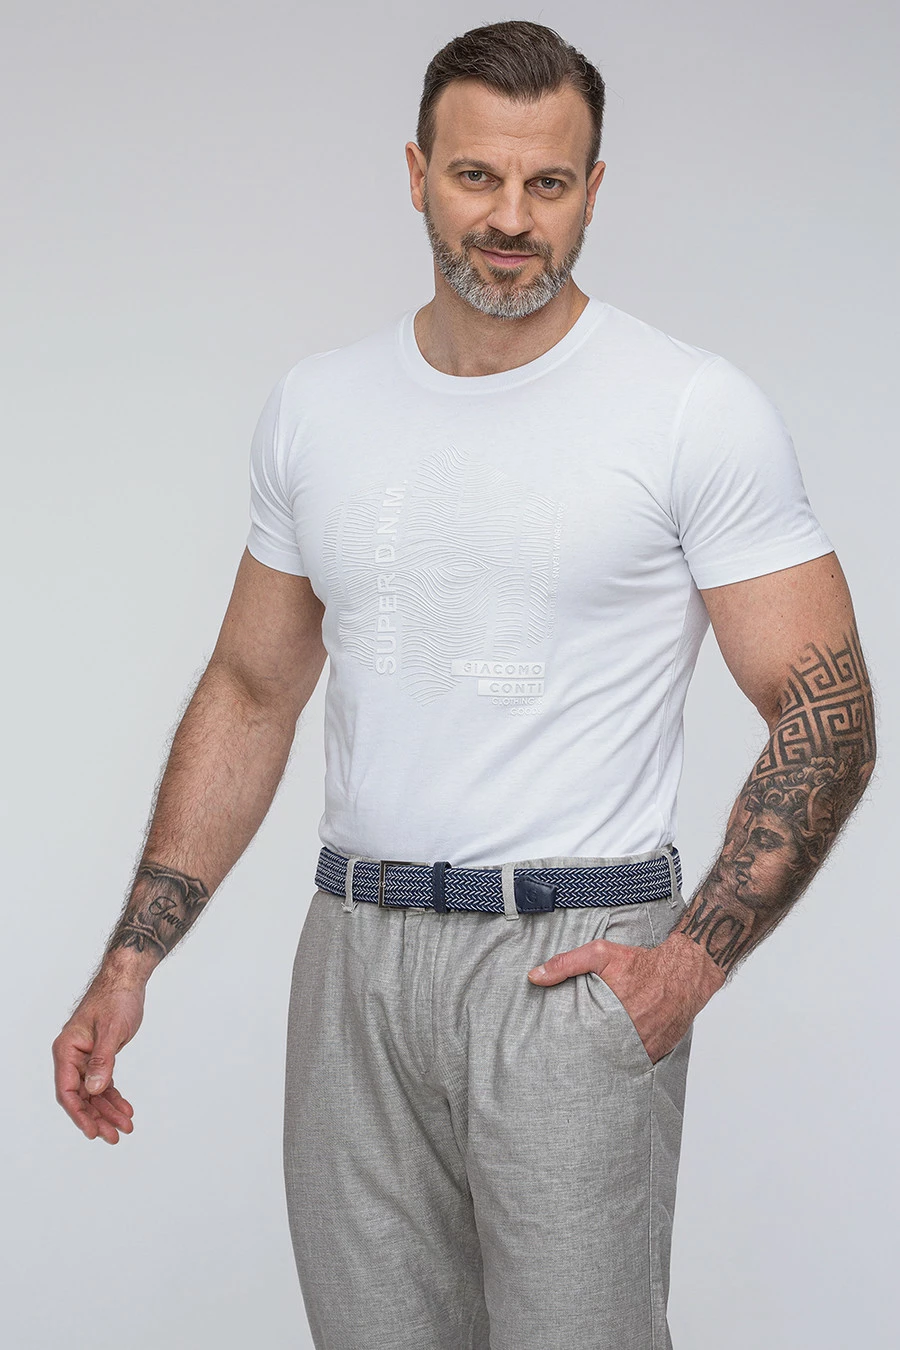 Trójwymiarowy biały t-shirt TSBS000070